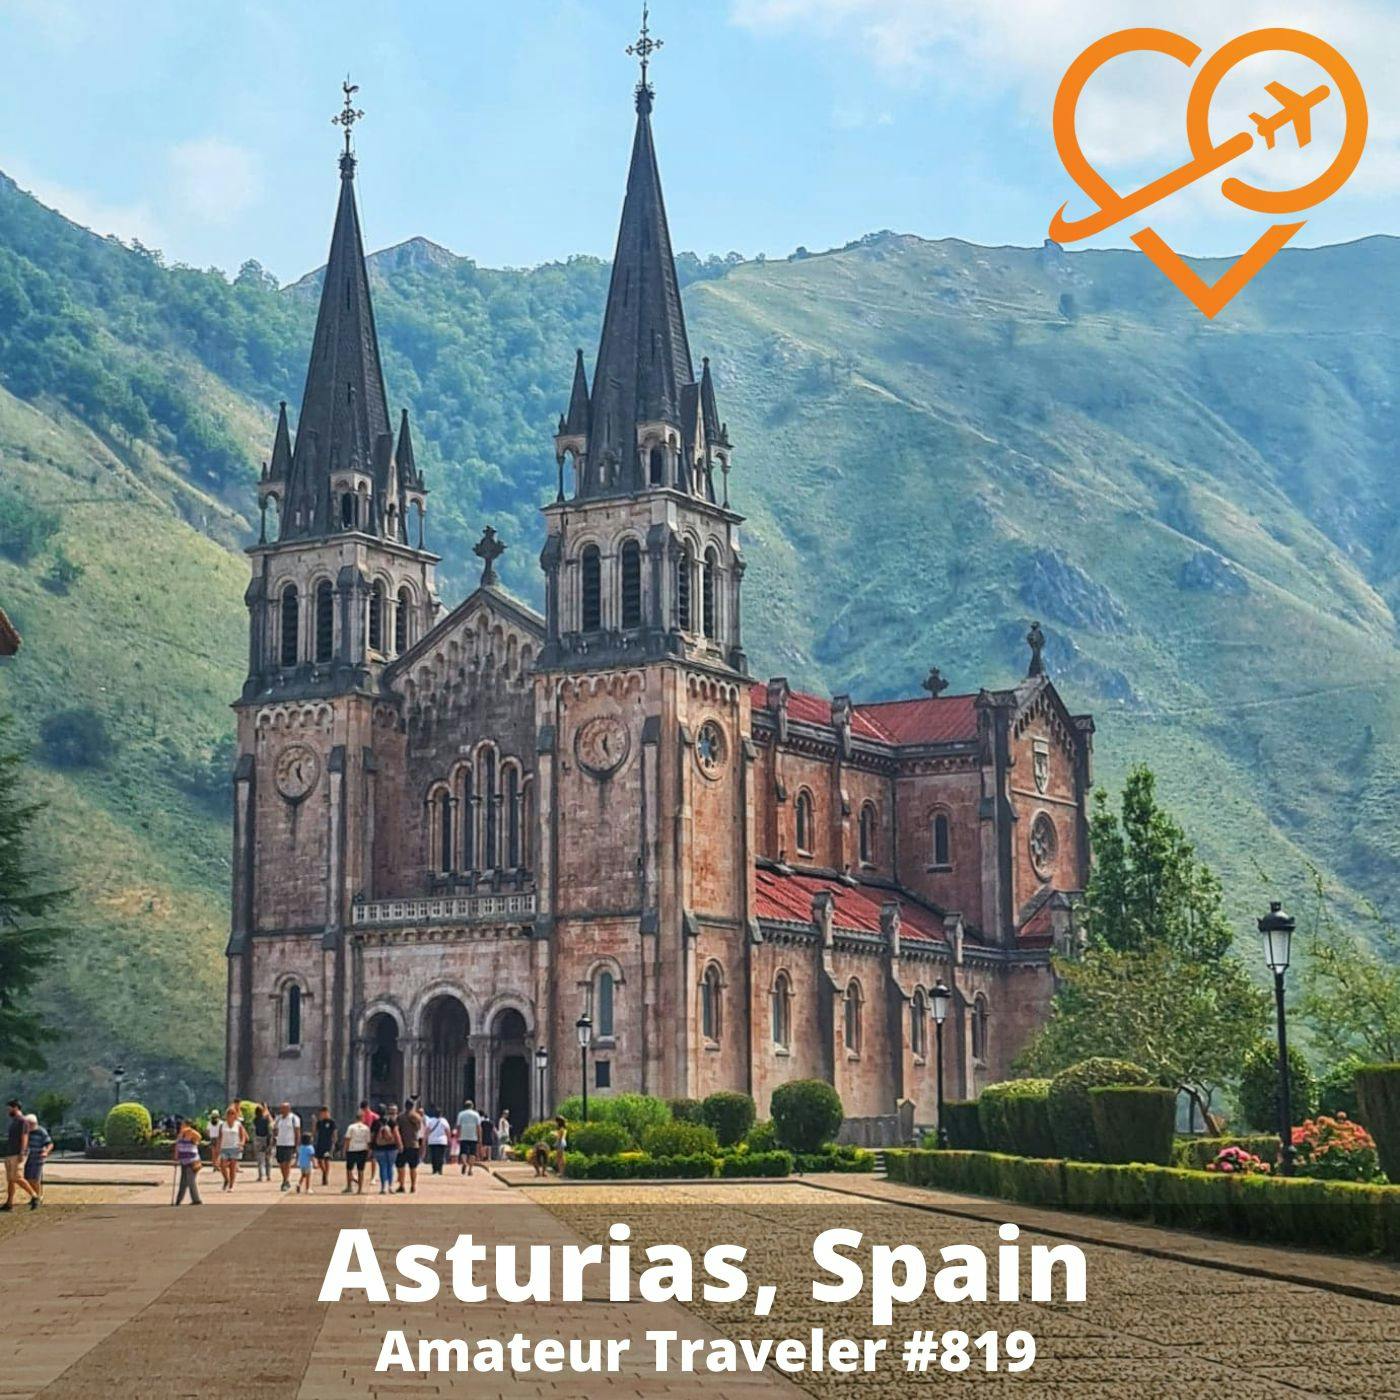 AT#819 - Travel to Asturias, Spain